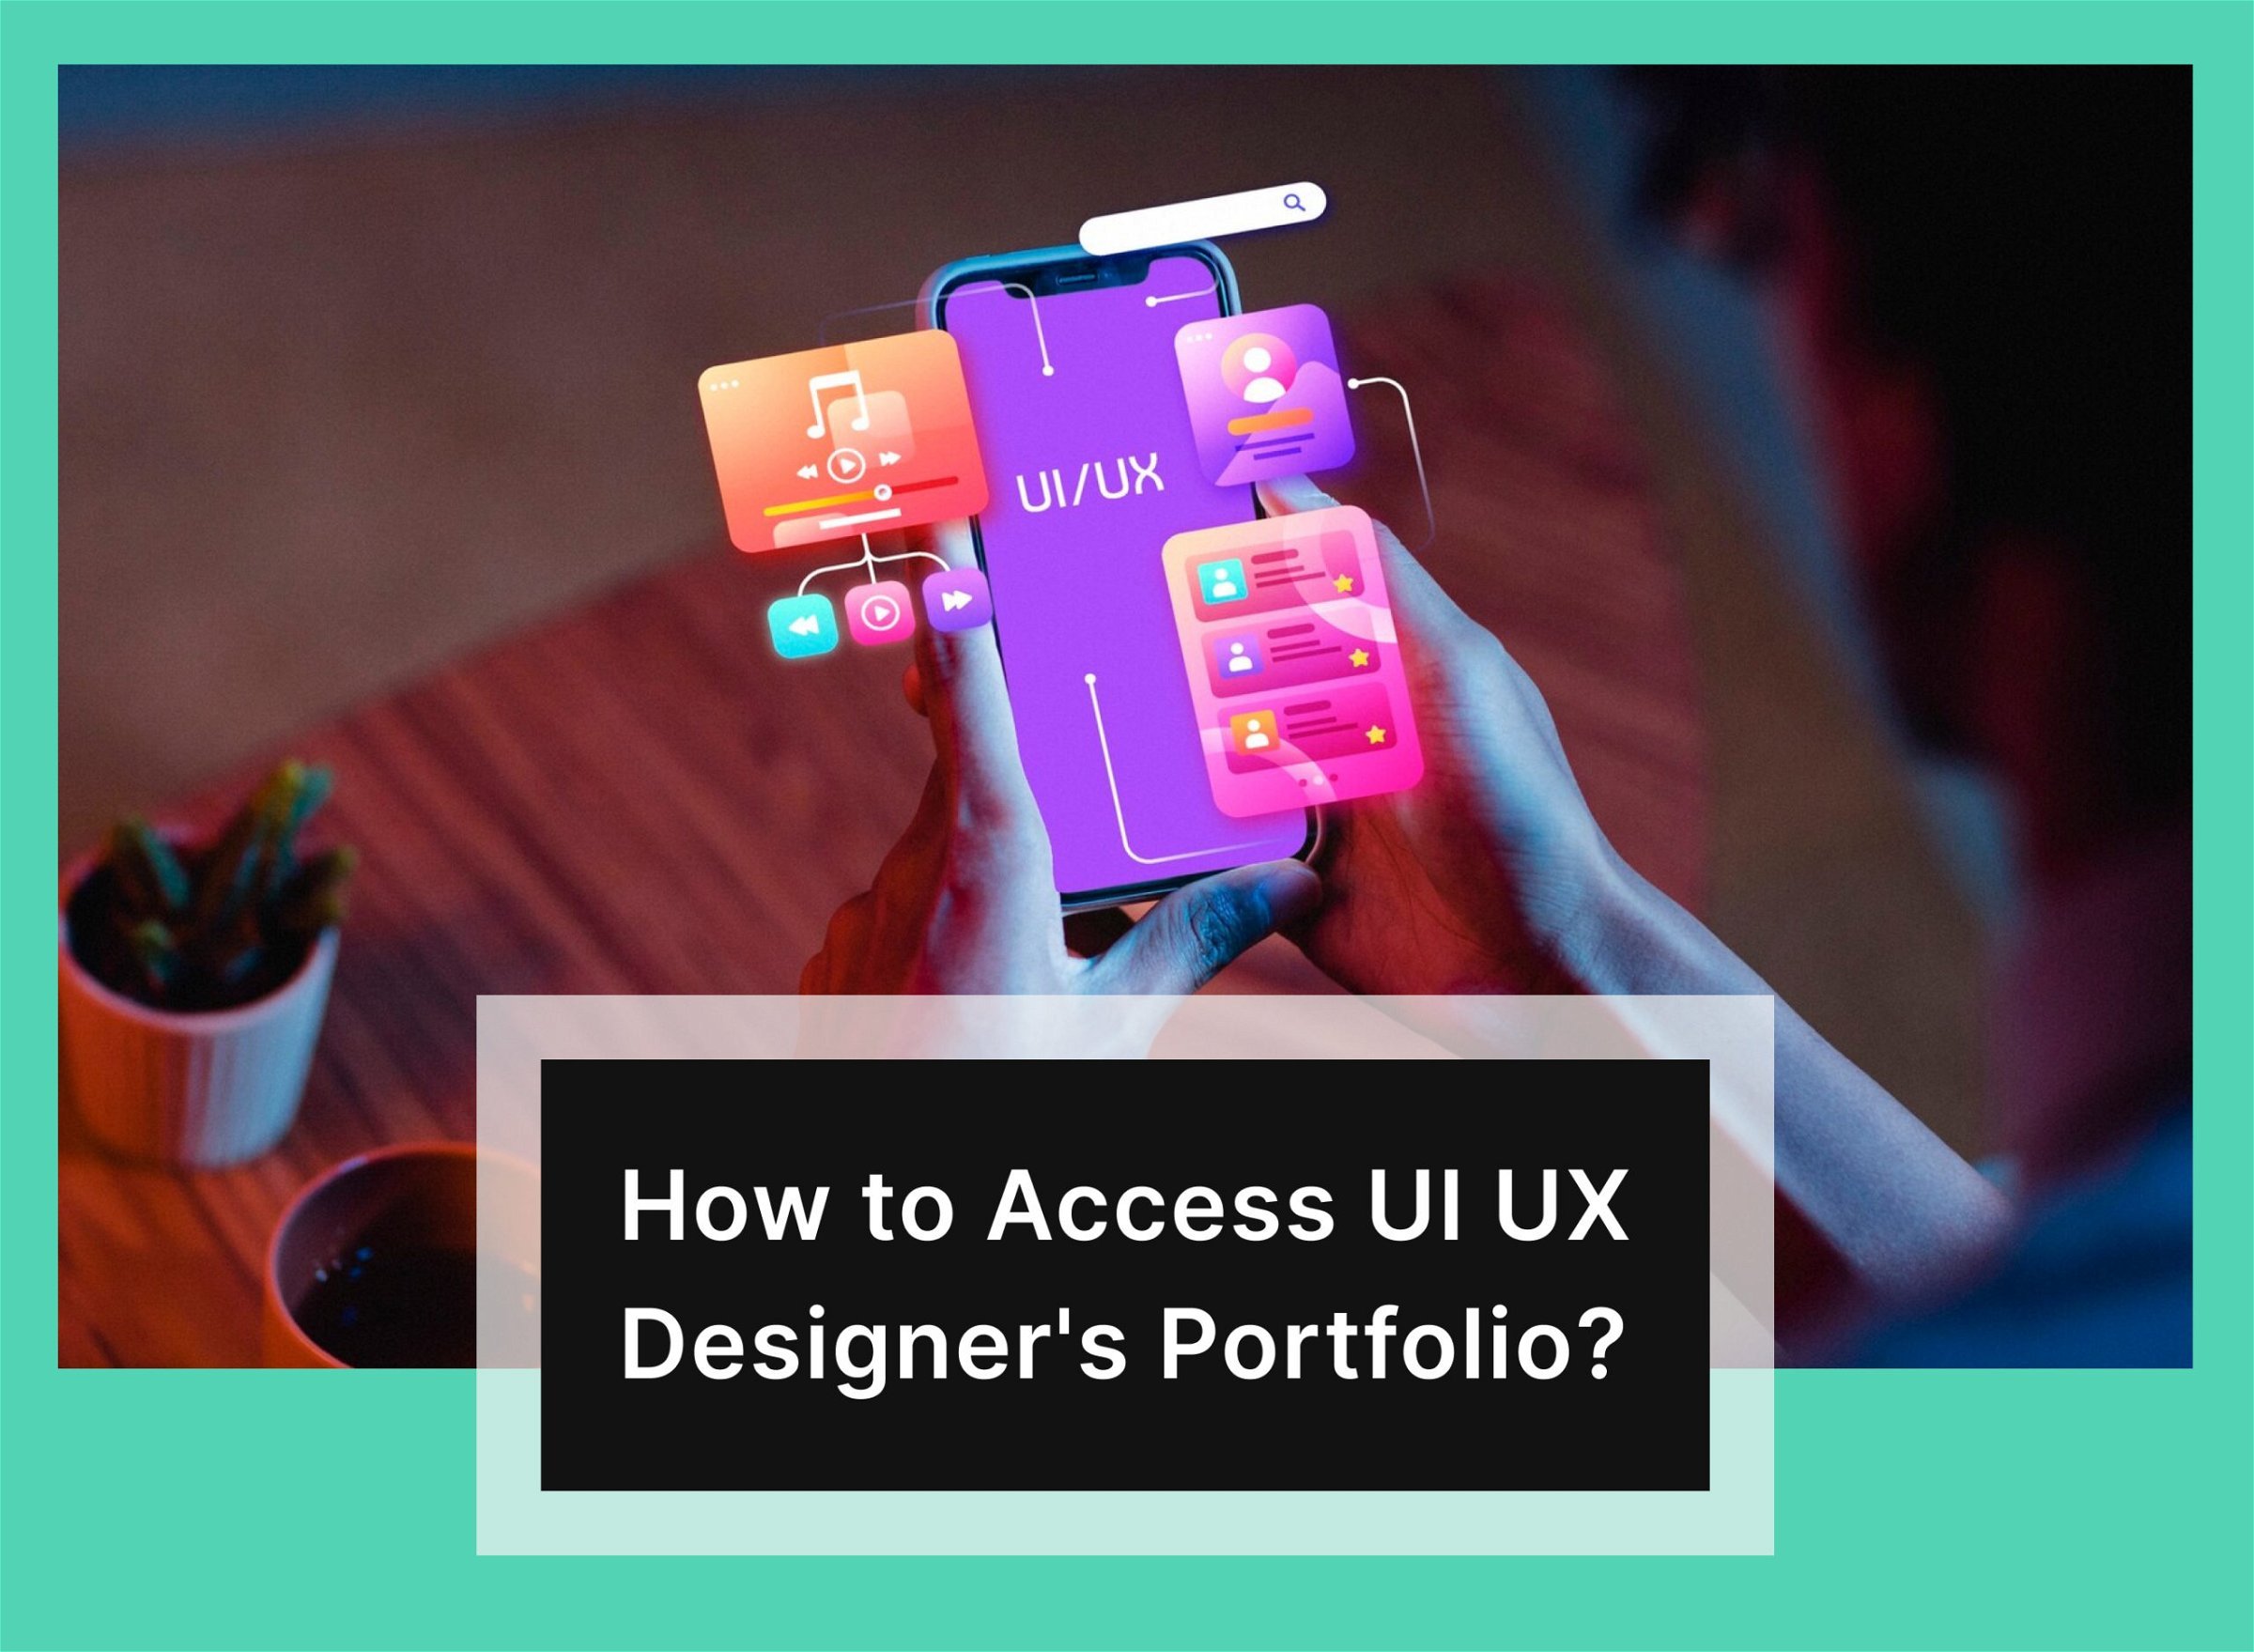 How to Assess the UI UX Designer's Portfolio?